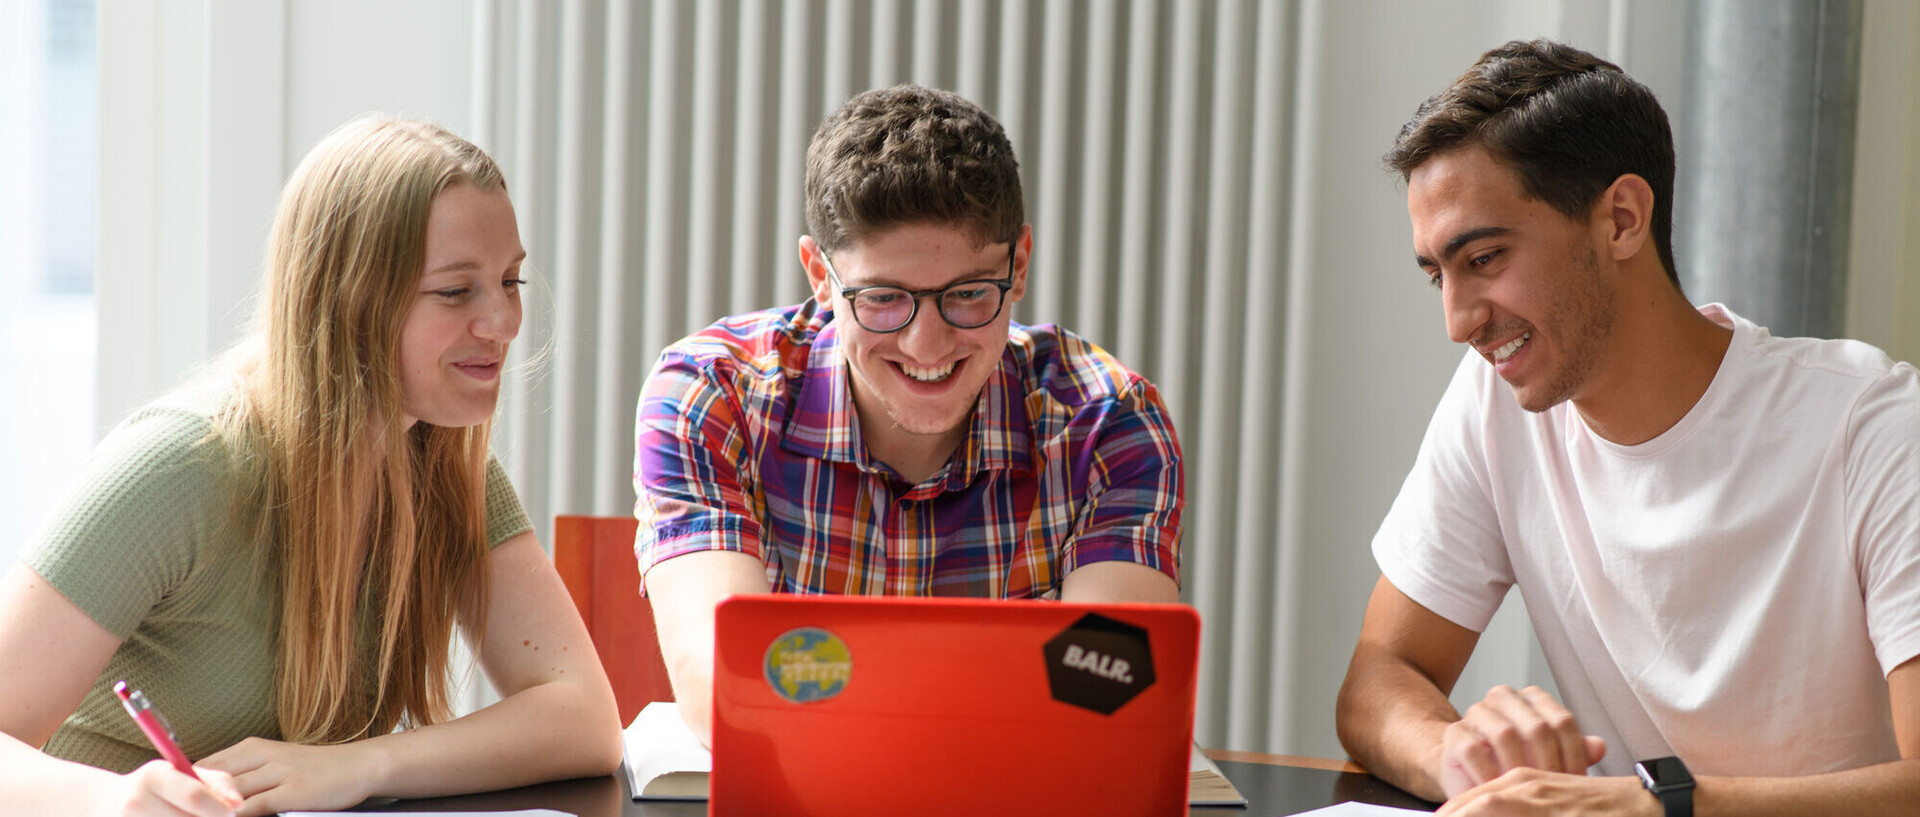 Drei Studierende sitzen mit ihren Arbeitsmaterialien vor einem roten Laptop